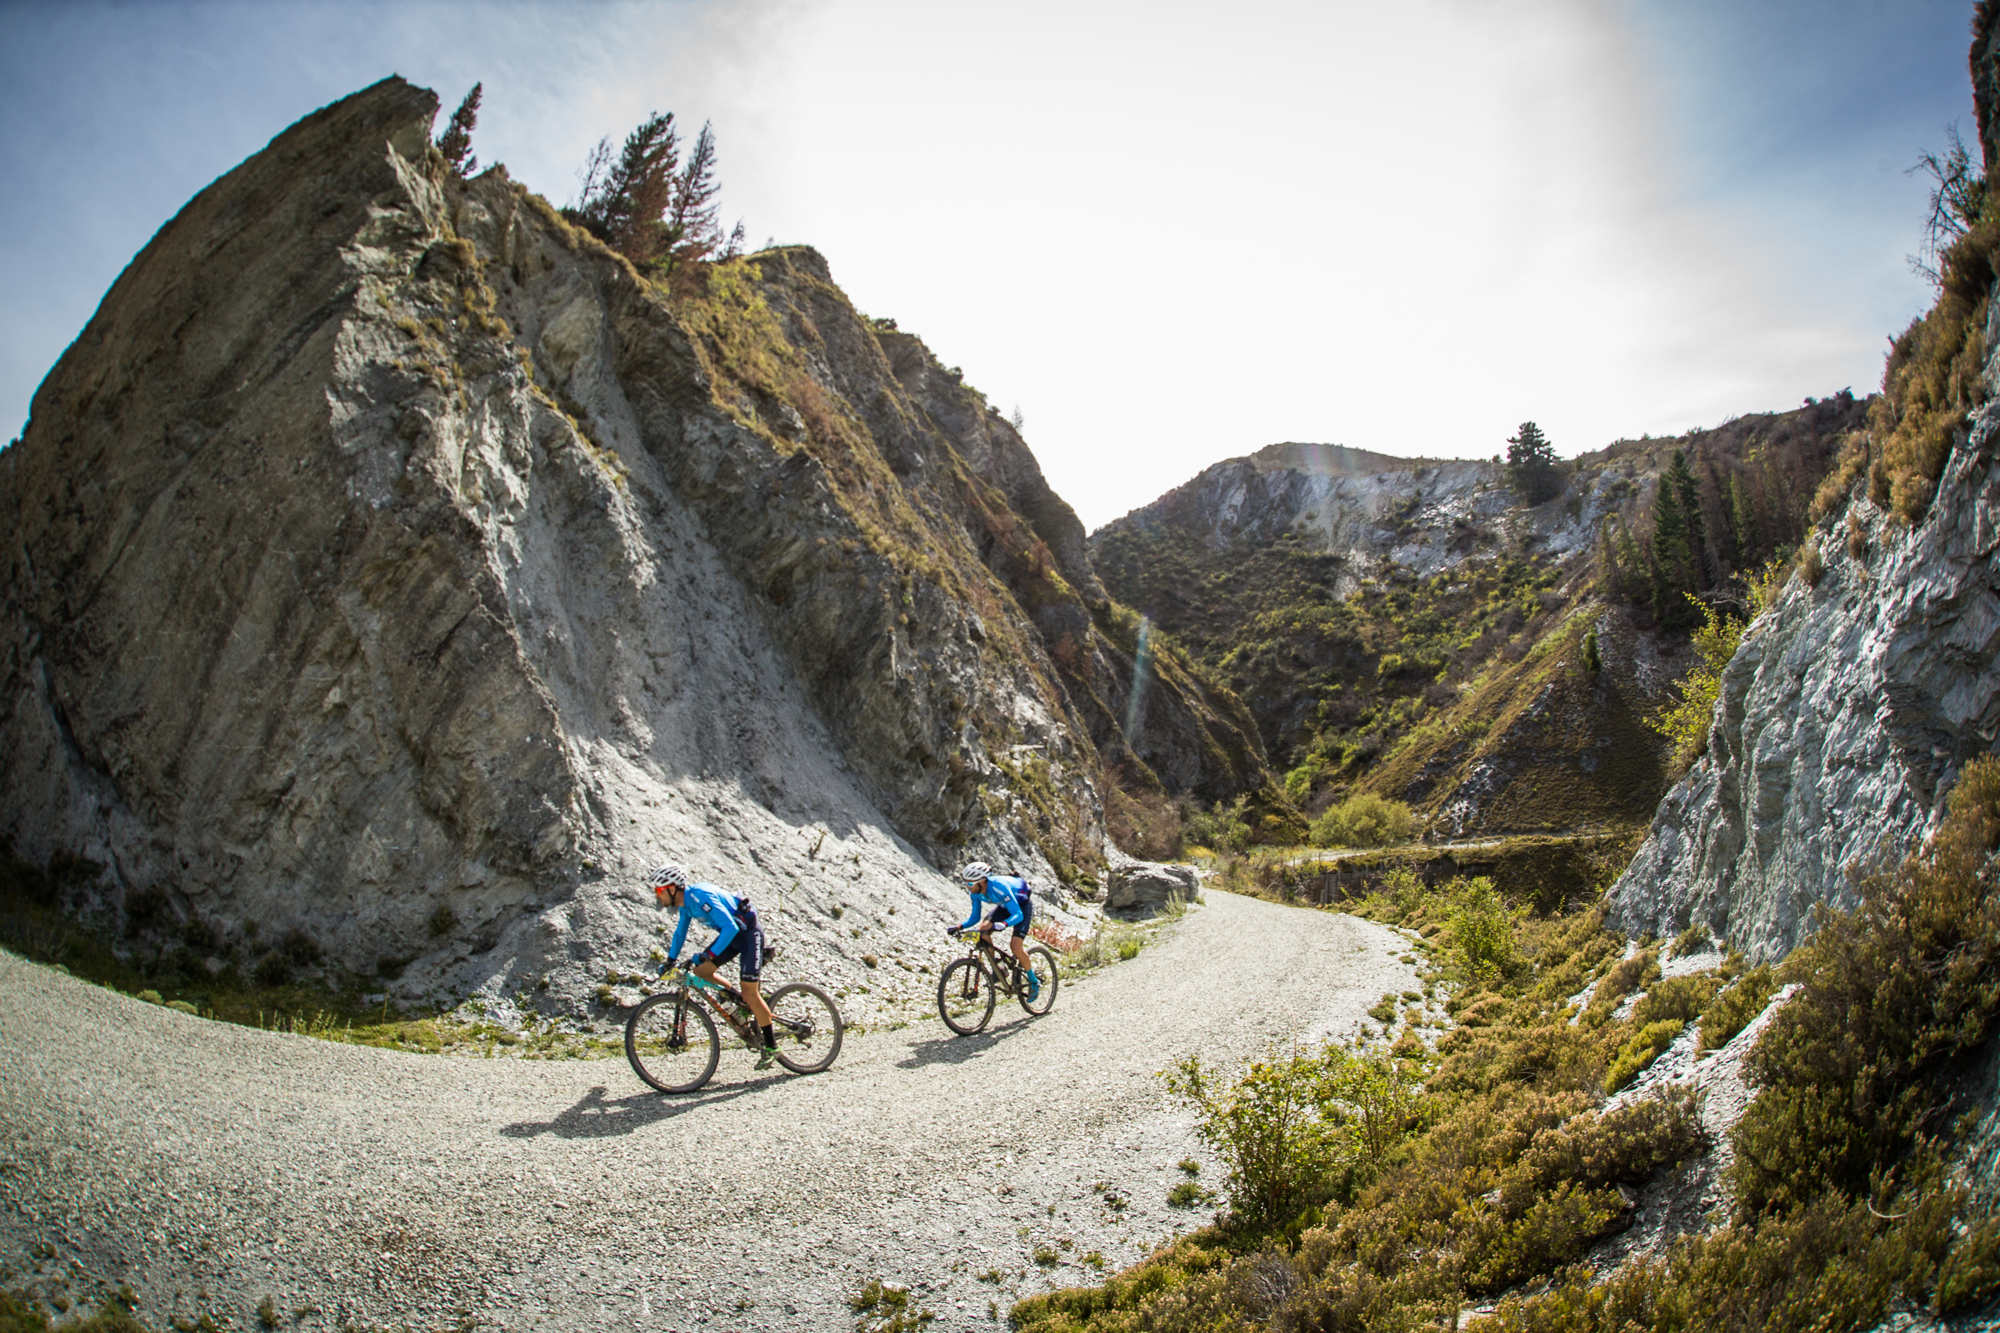 Αποτέλεσμα εικόνας για New Zealand’s epic Pioneer mountain bike race returns in 2018